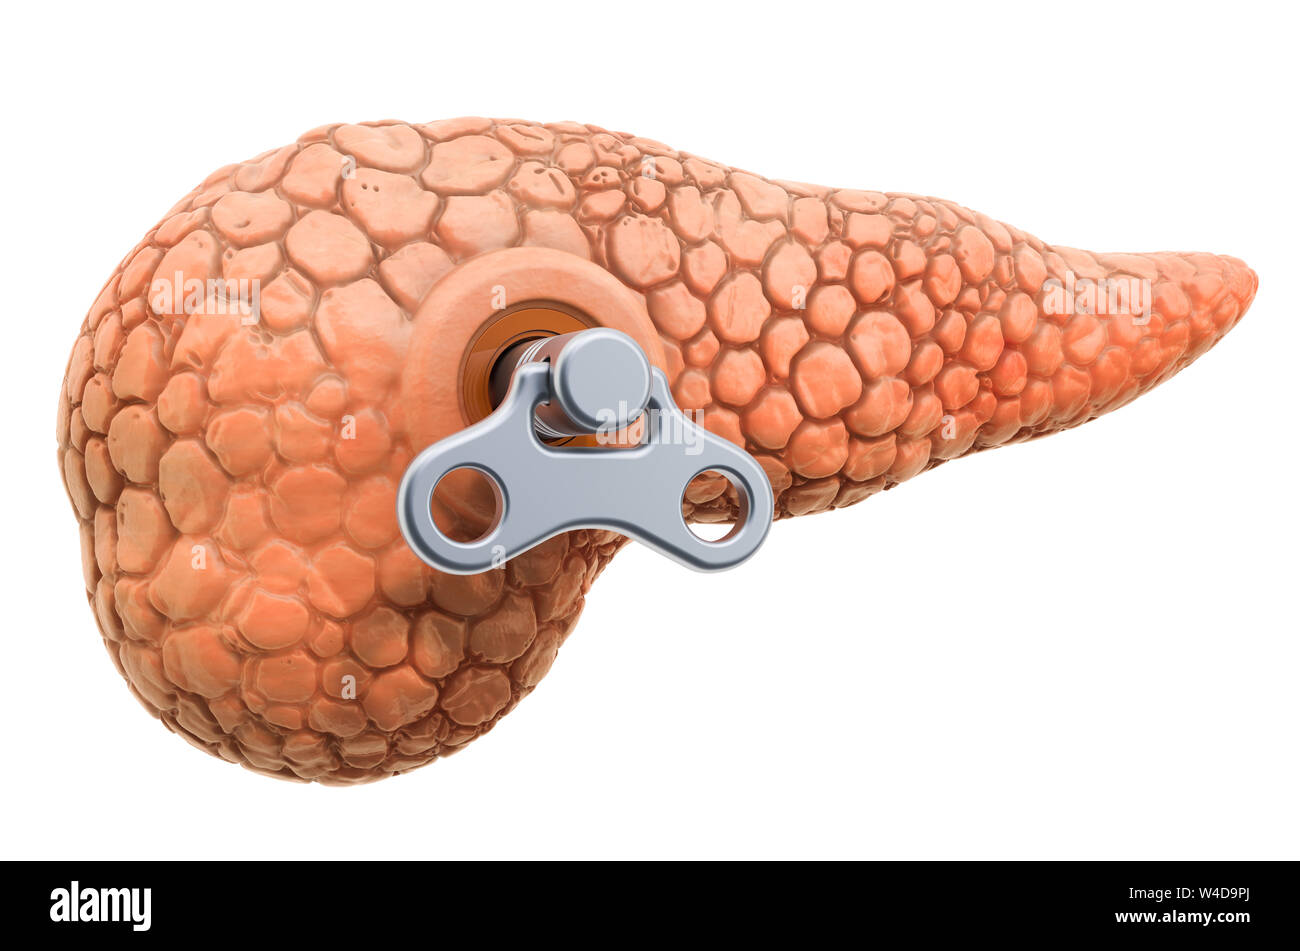 Die menschliche Bauchspeicheldrüse mit wind-up-Taste. Behandlung und Verwertung Konzept. 3D-Rendering auf weißem Hintergrund Stockfoto